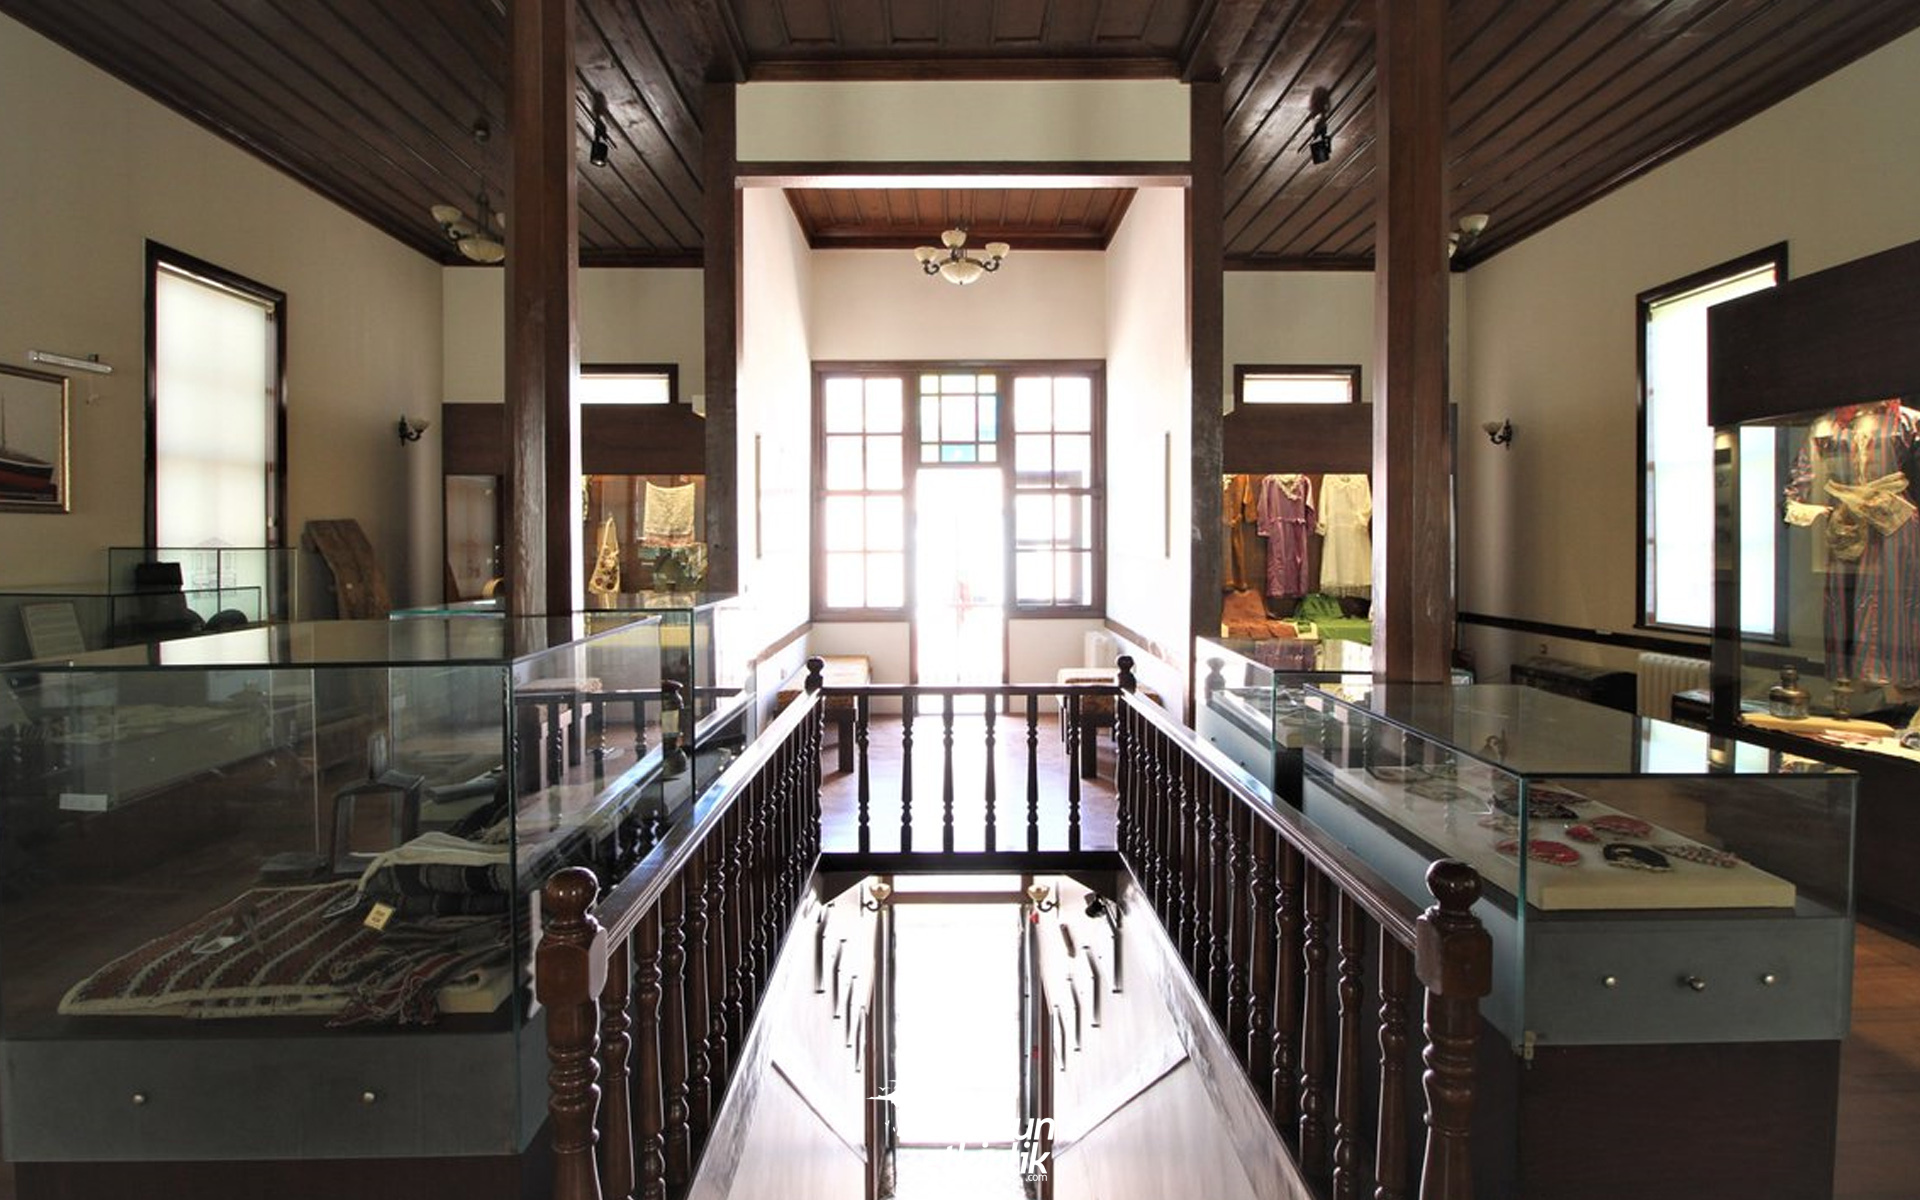 Alaçam Mübadele Müzesi